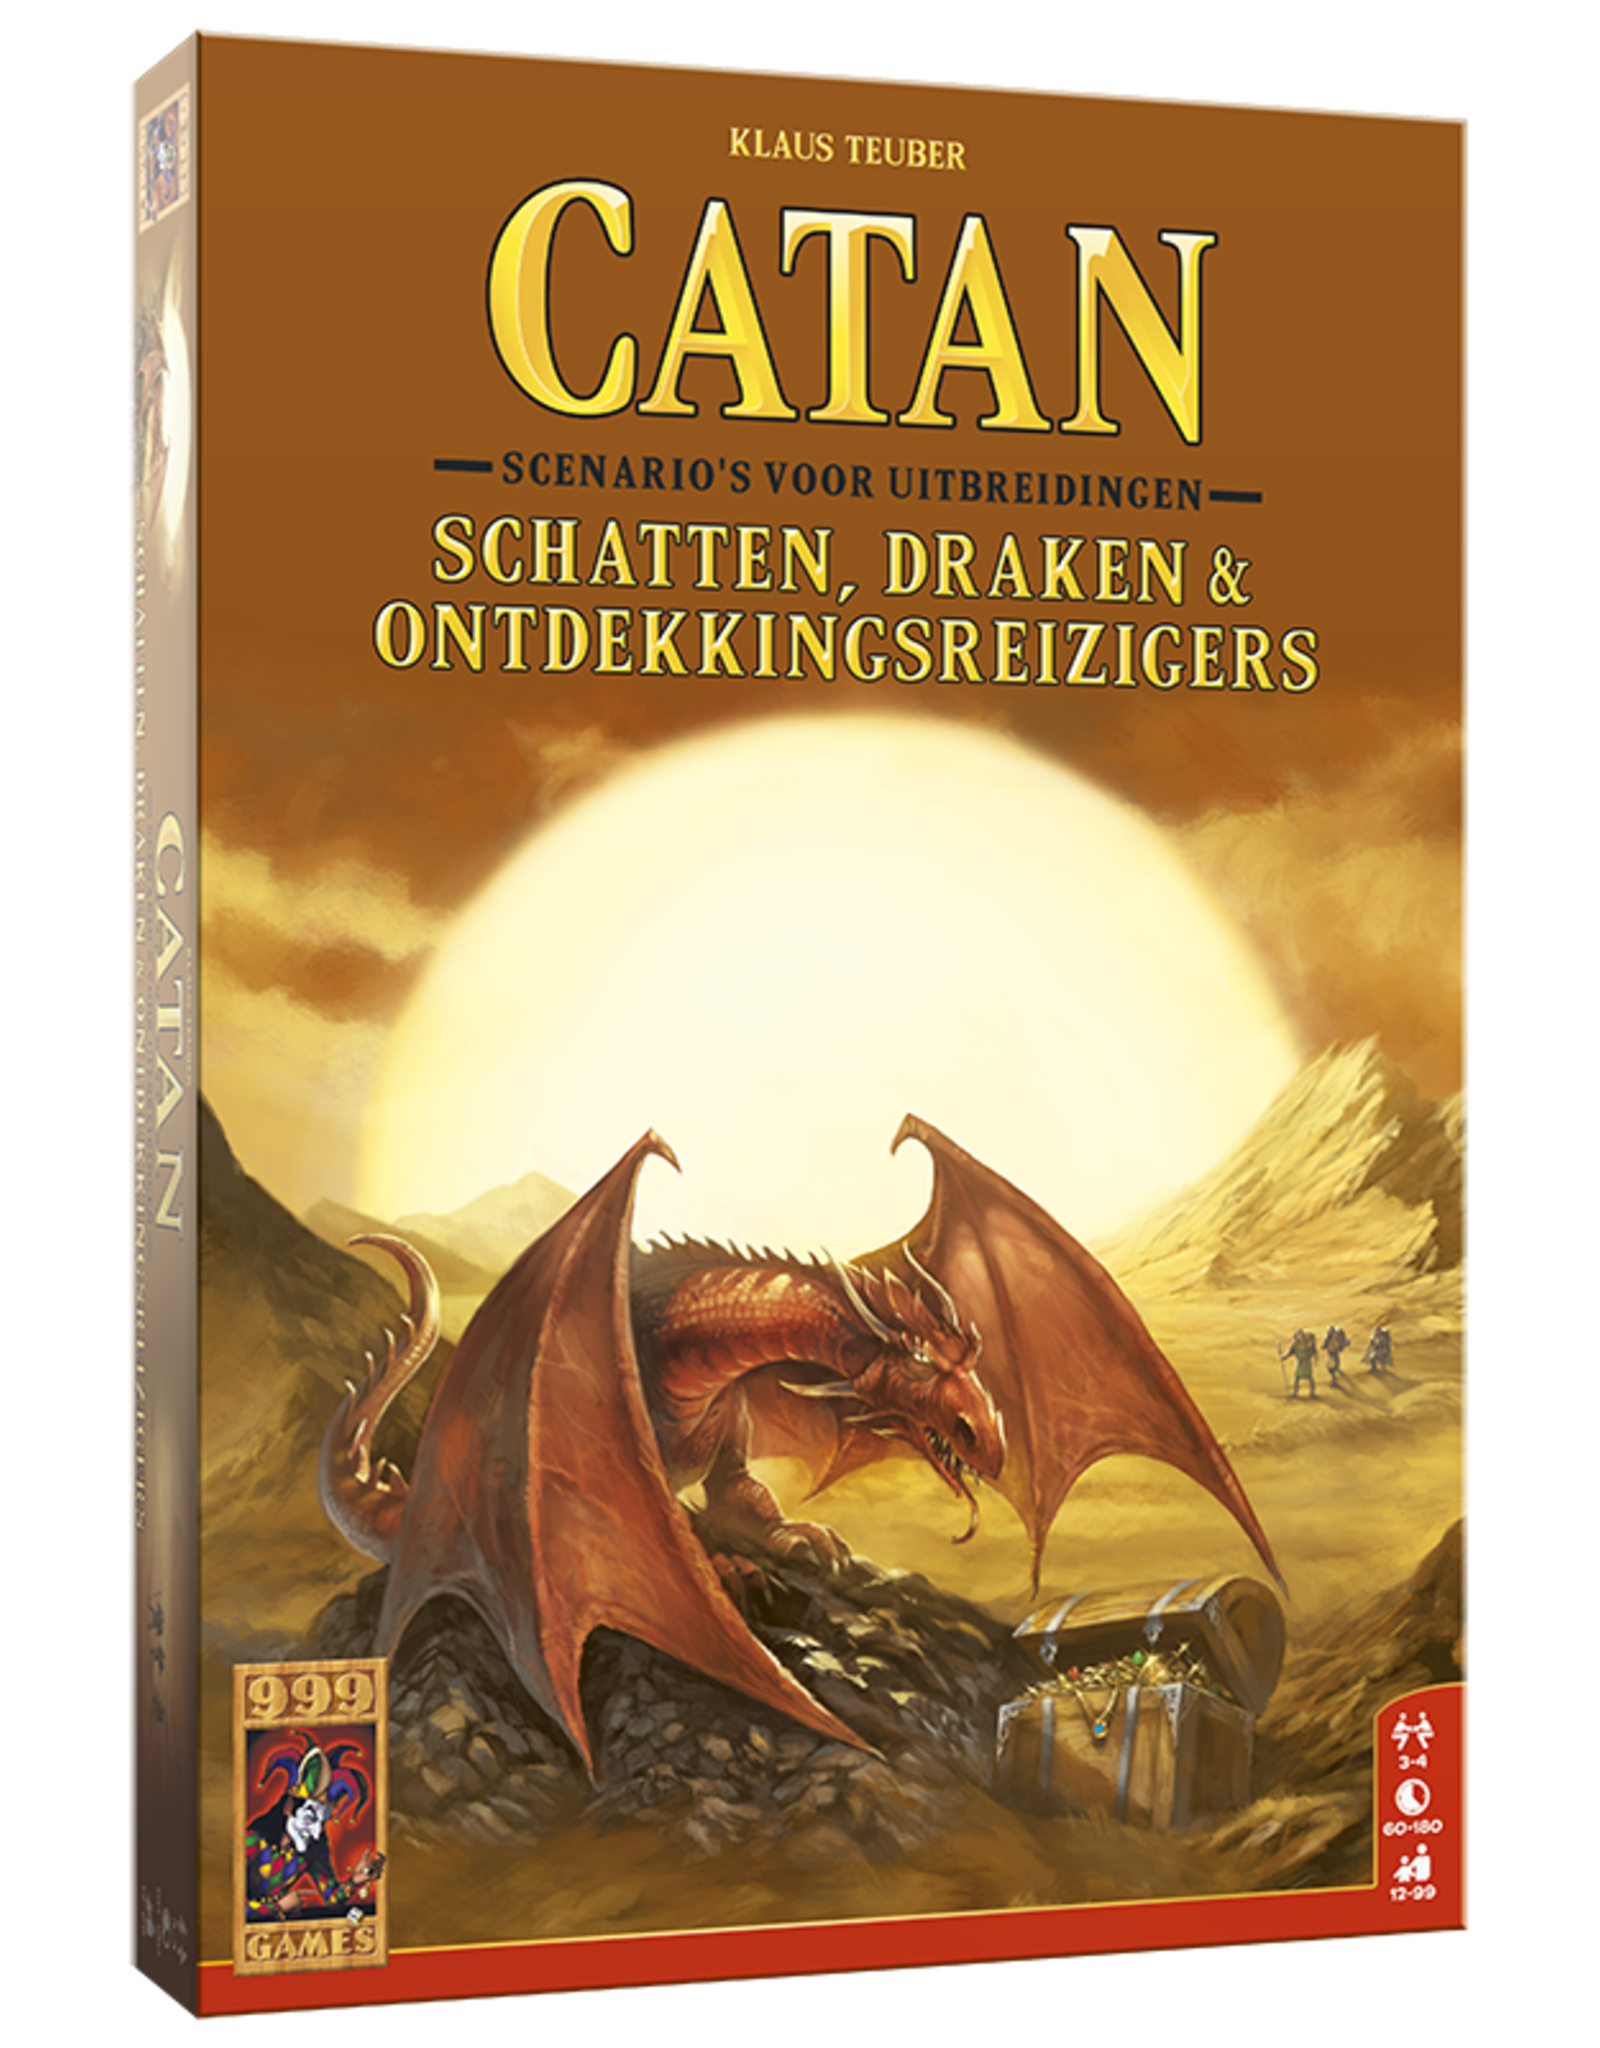 999 Games Catan: Schatten, Draken & Ontdekkingsreizigers